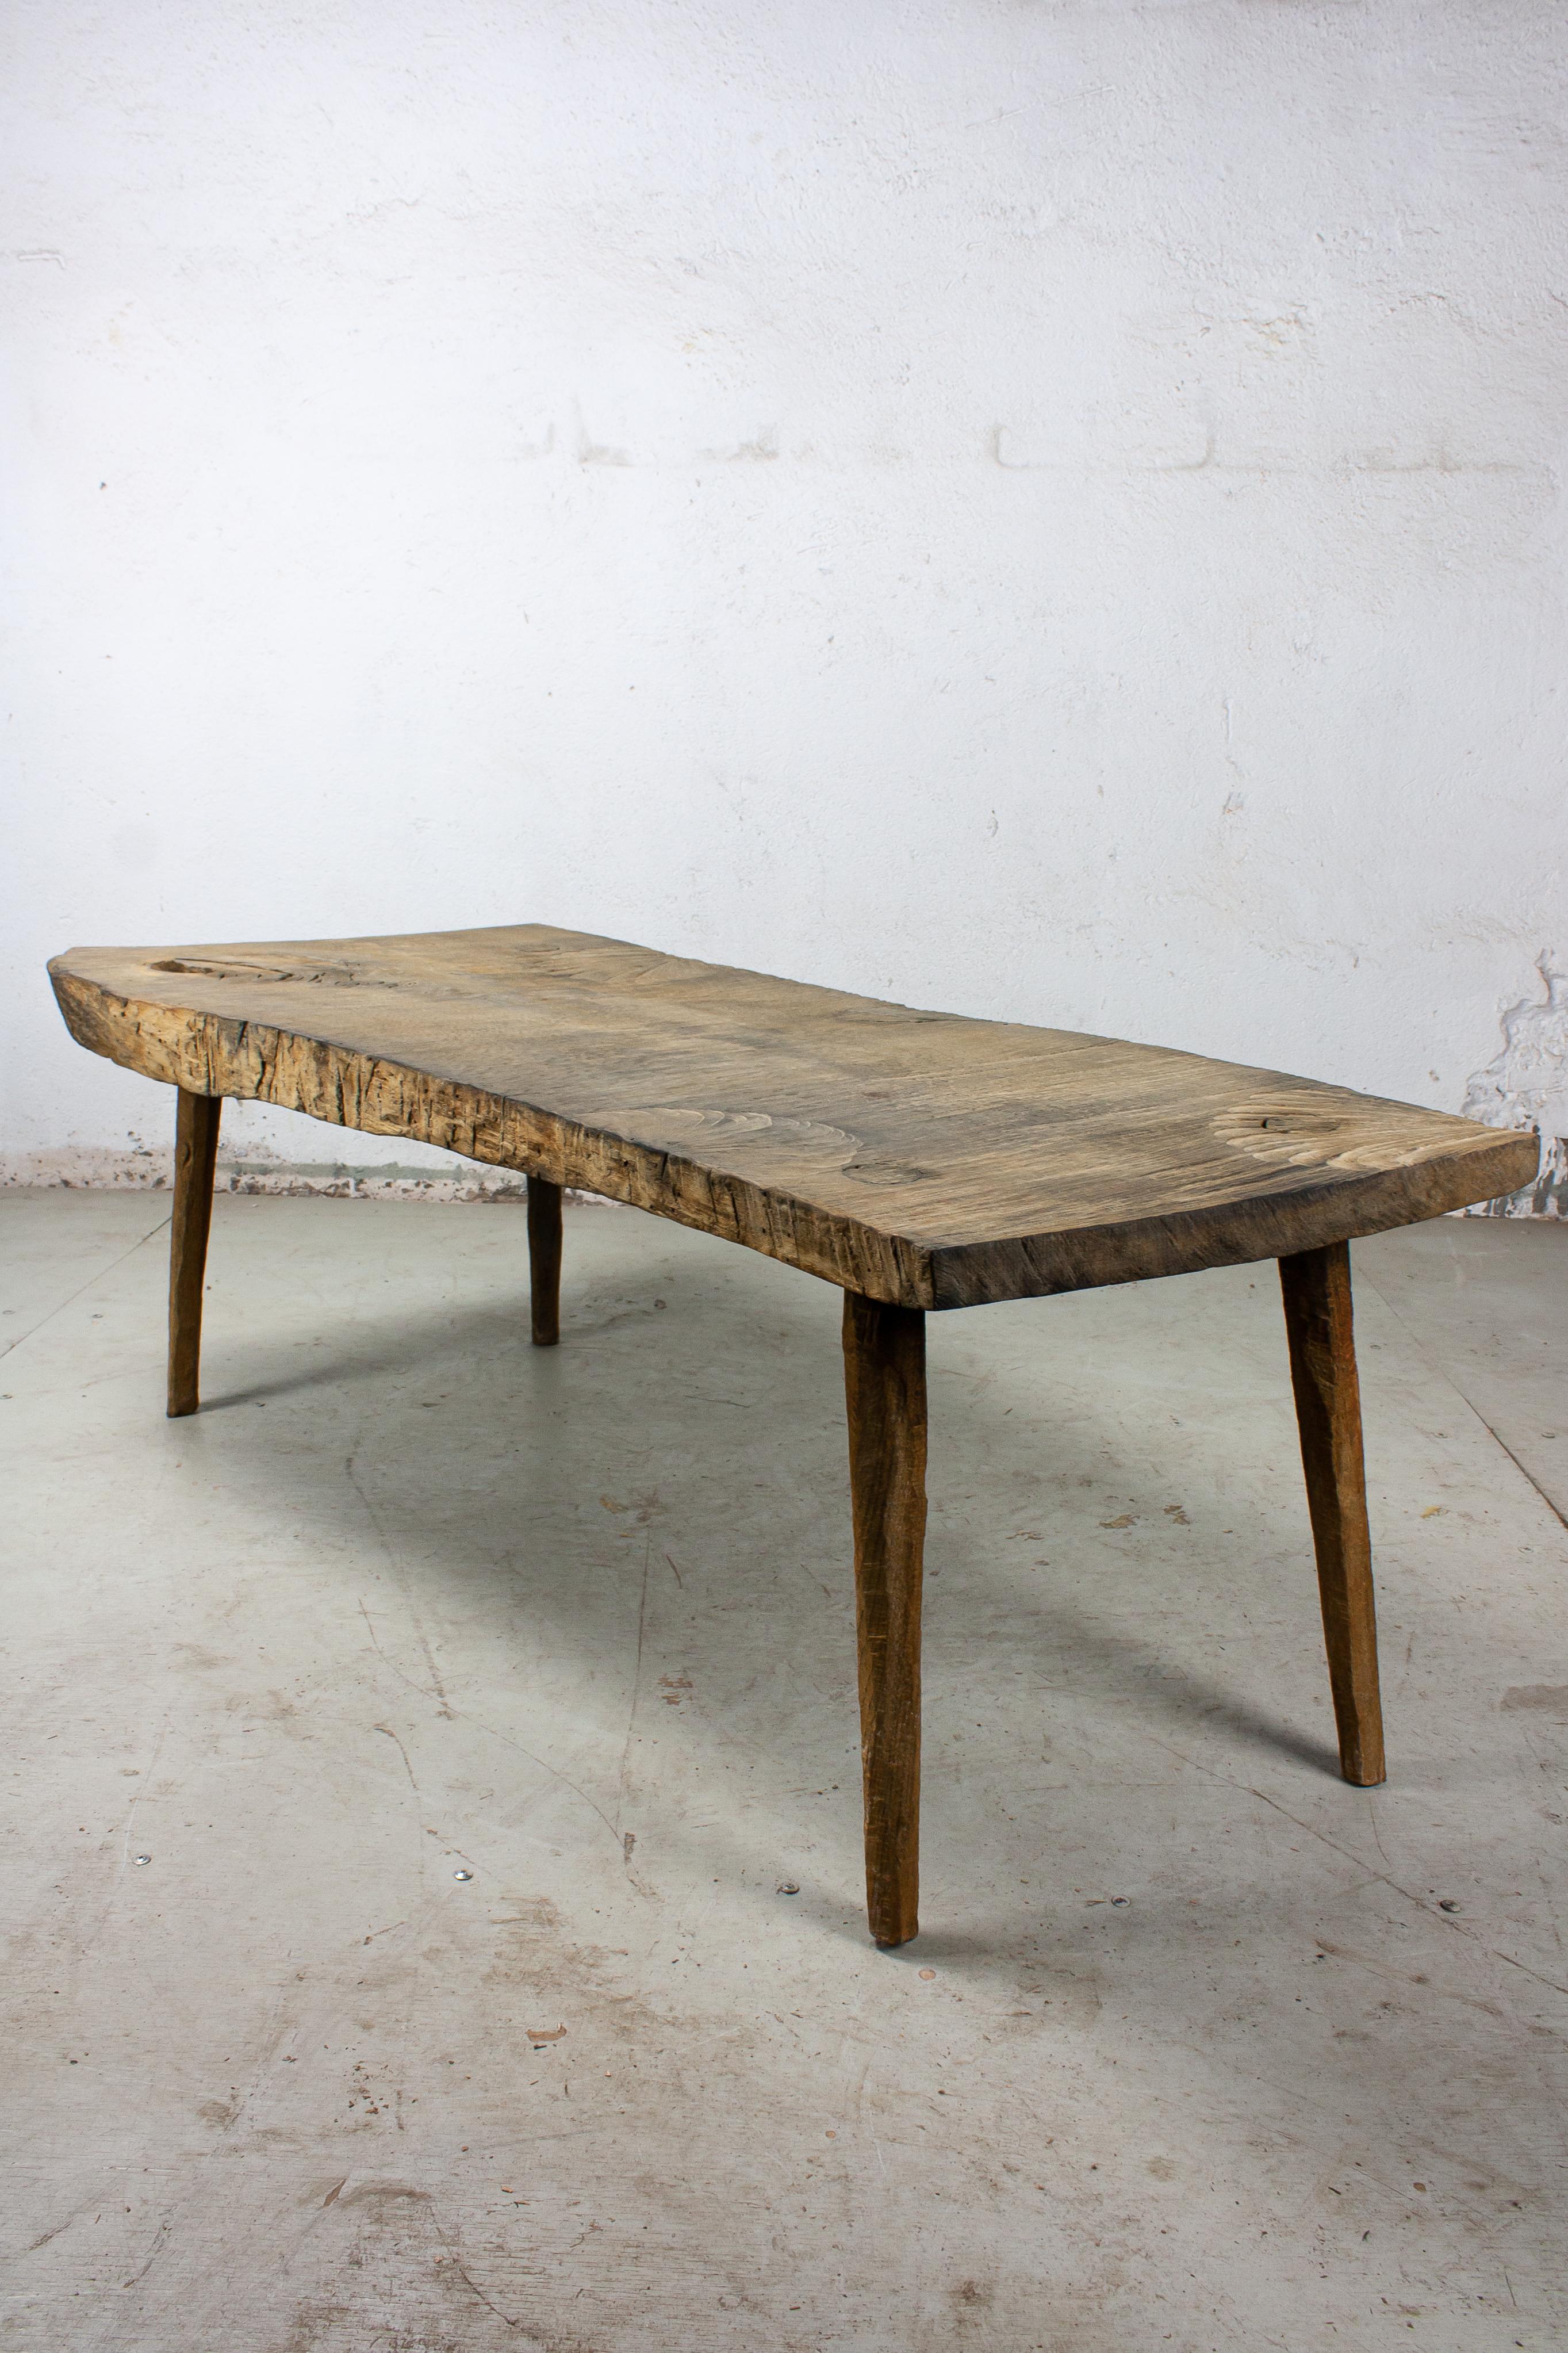 Kleiner Tisch aus massiver Eiche (+ Leinöl)
Maße: 50 x 123 x 45 cm

Das Sóha Design Studio entwirft und produziert Möbel und Dekorationsobjekte aus massiver Eiche in einem authentischen Stil. Die Inspiration für all diese Gegenstände kommt von der